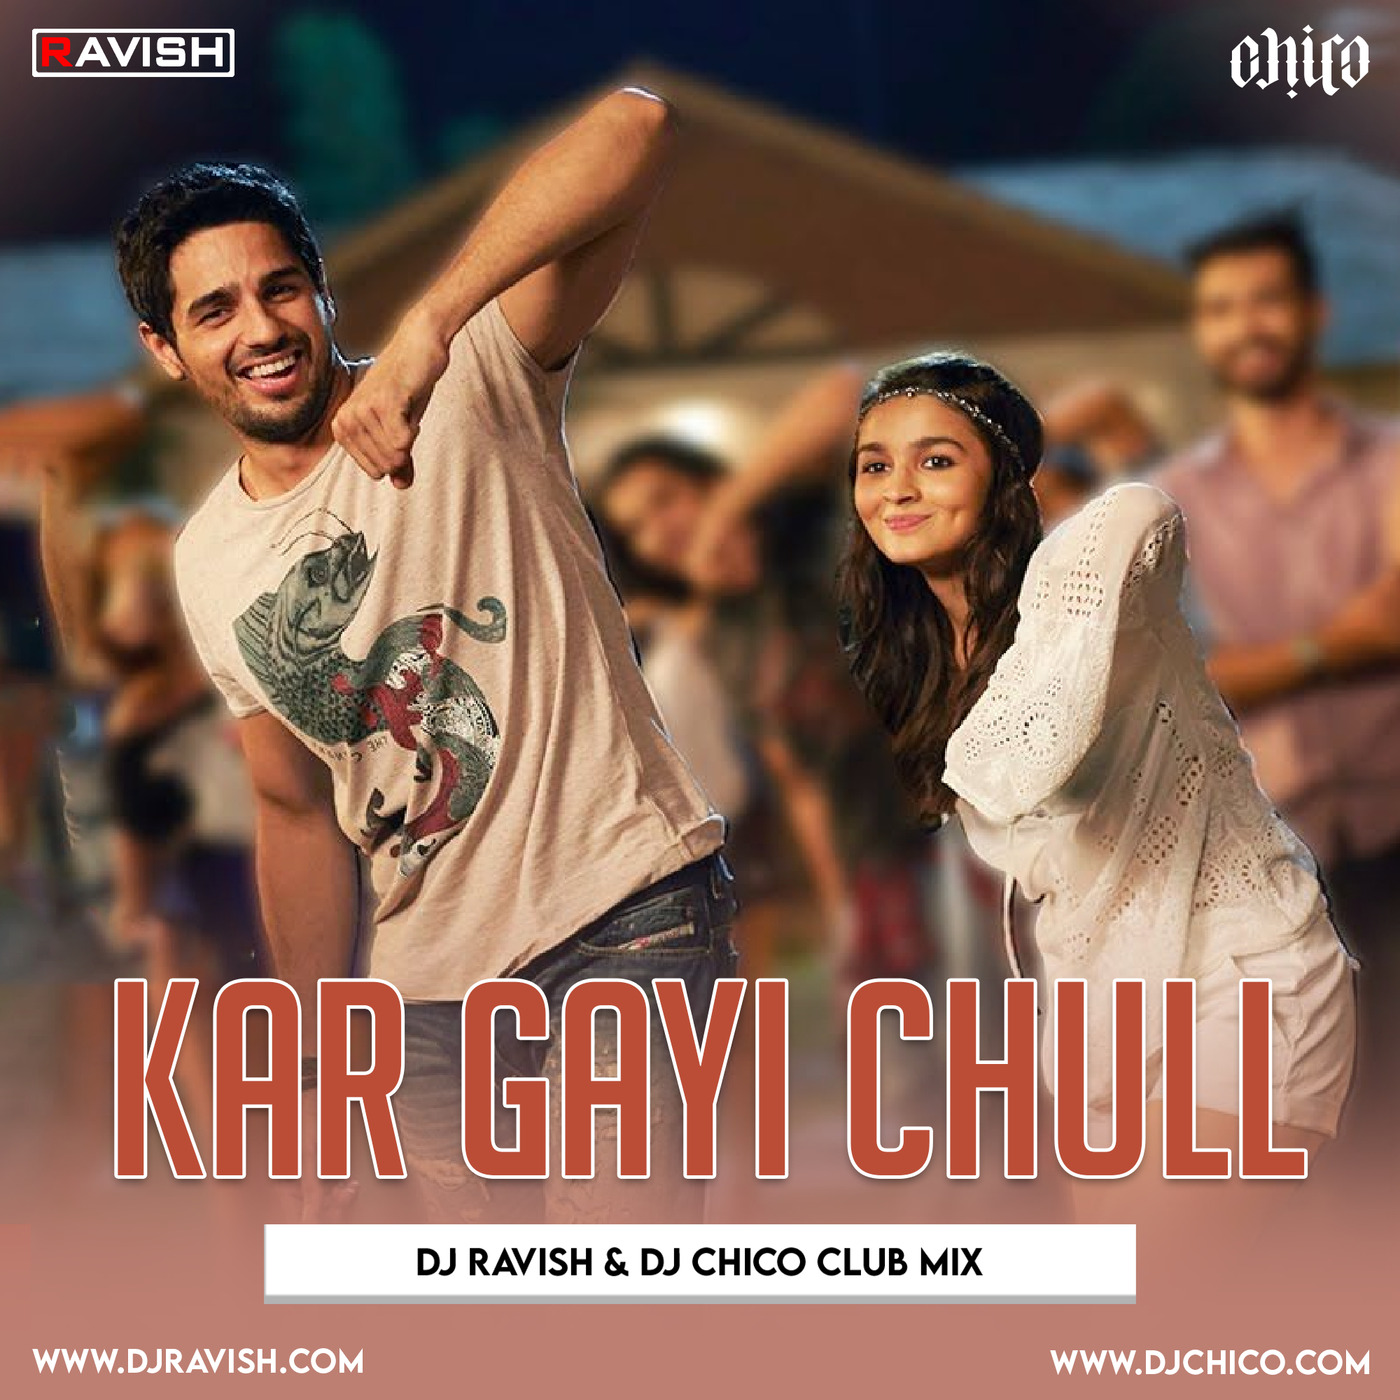 Kapoor & Sons - Kar Gayi Chull (DJ Ravish & DJ Chico Club Mix)